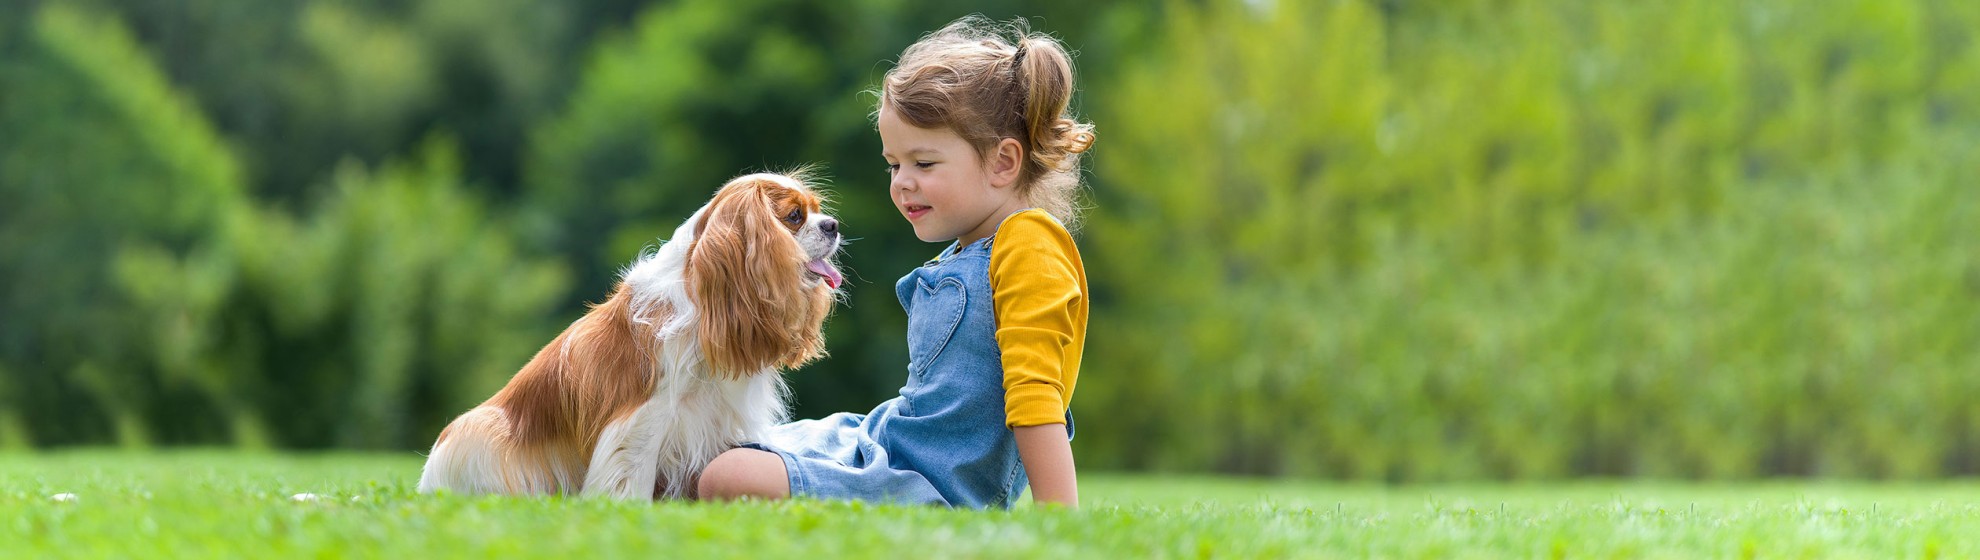 Ein kleine Mädchen sitzt mit einem Hund auf einer Wiese